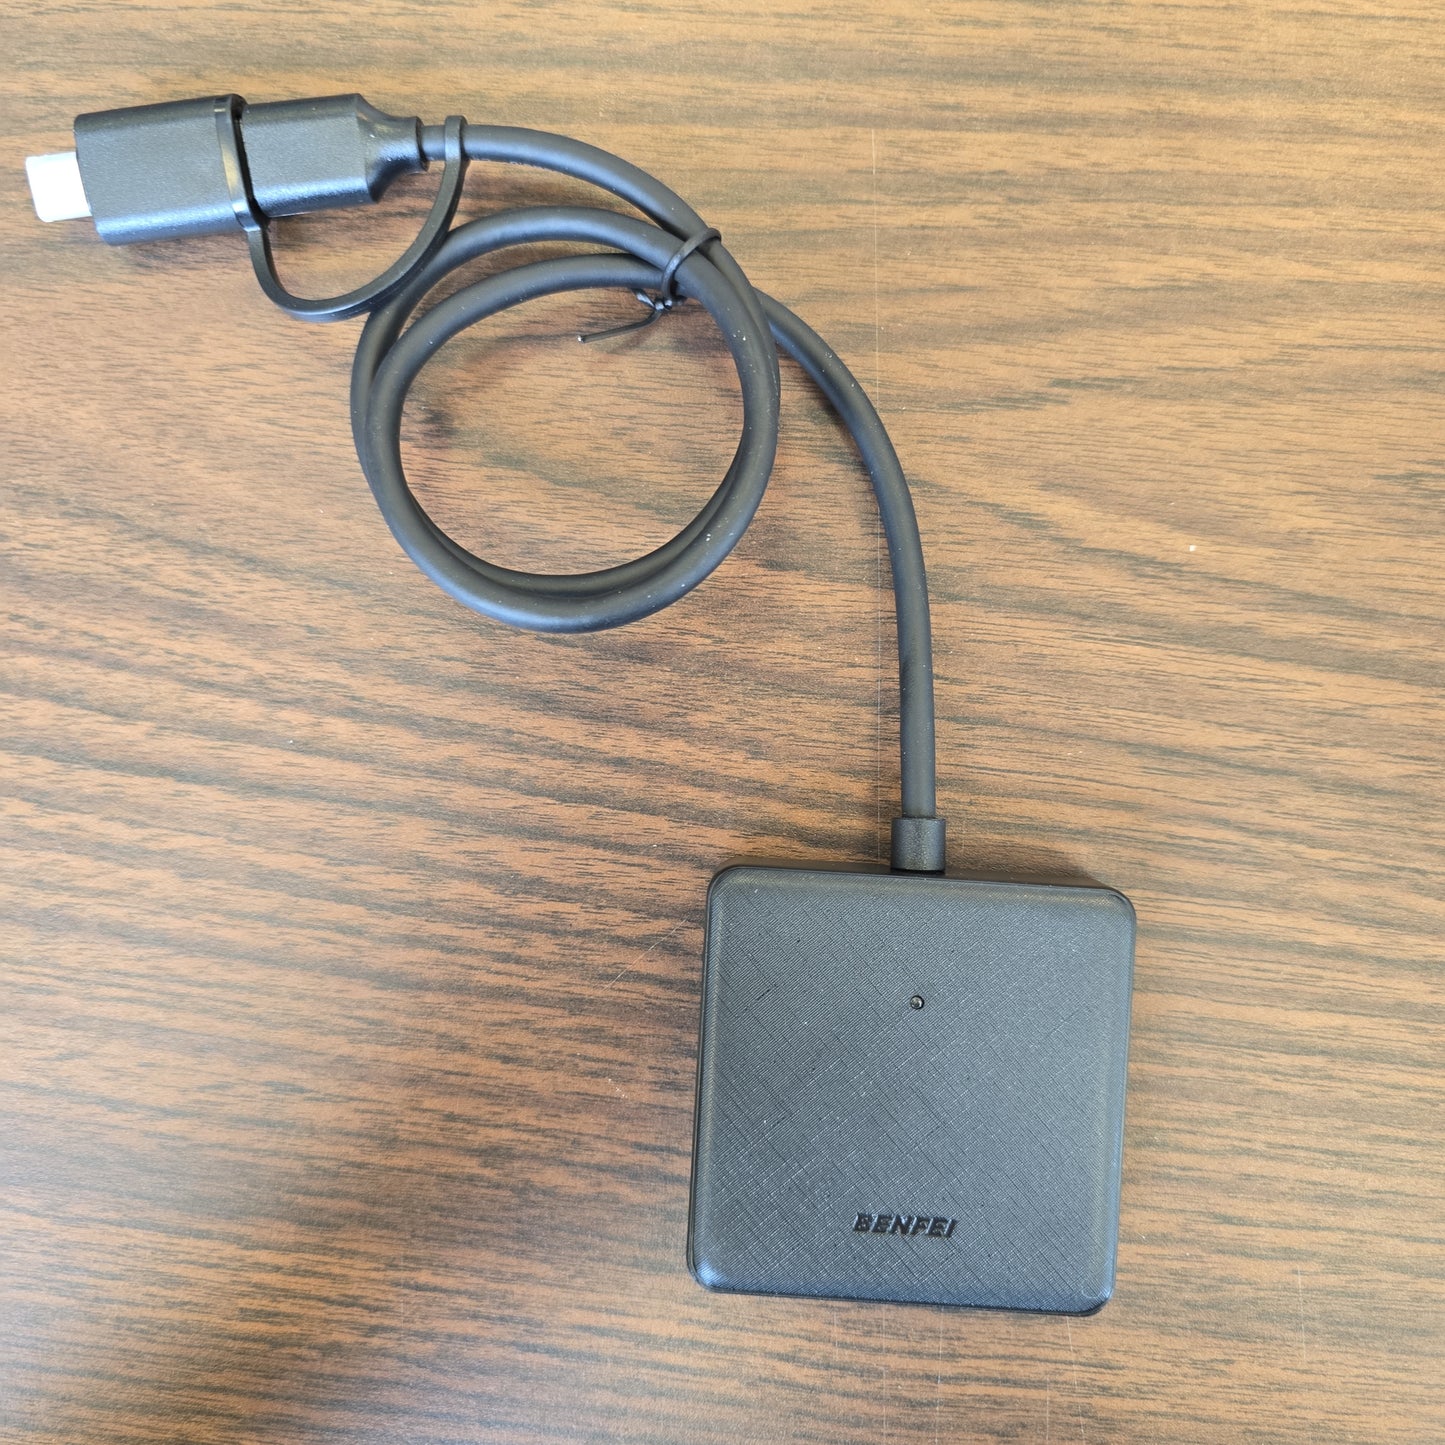 USB External SD Card Reader